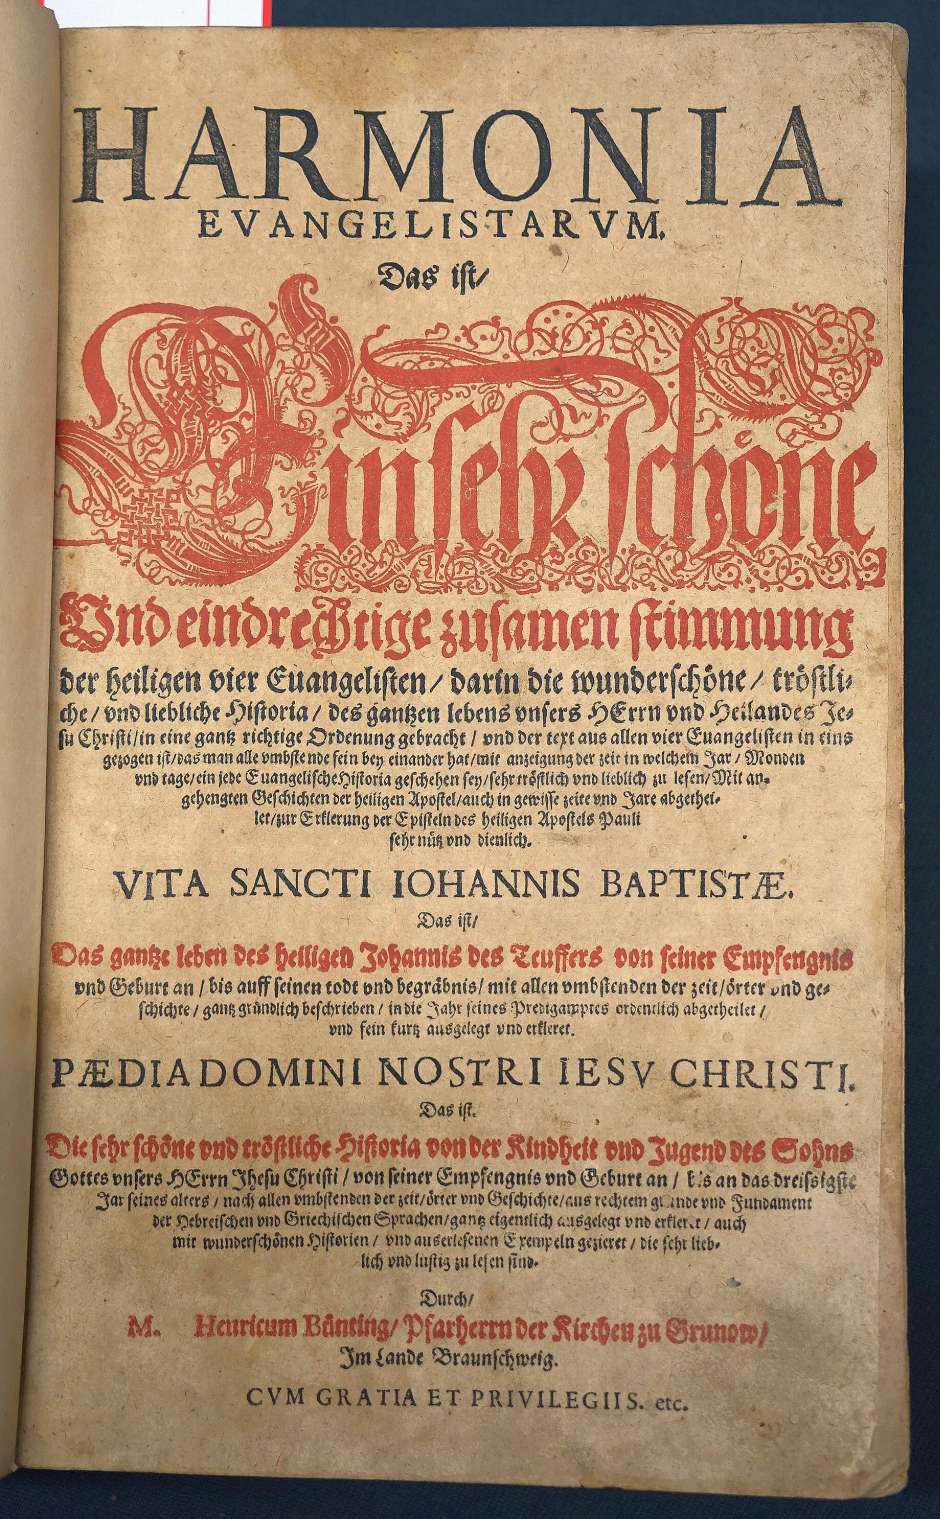 Lot 1081, Auction  115, Bünting, Heinrich, Harmonia evangelistarum